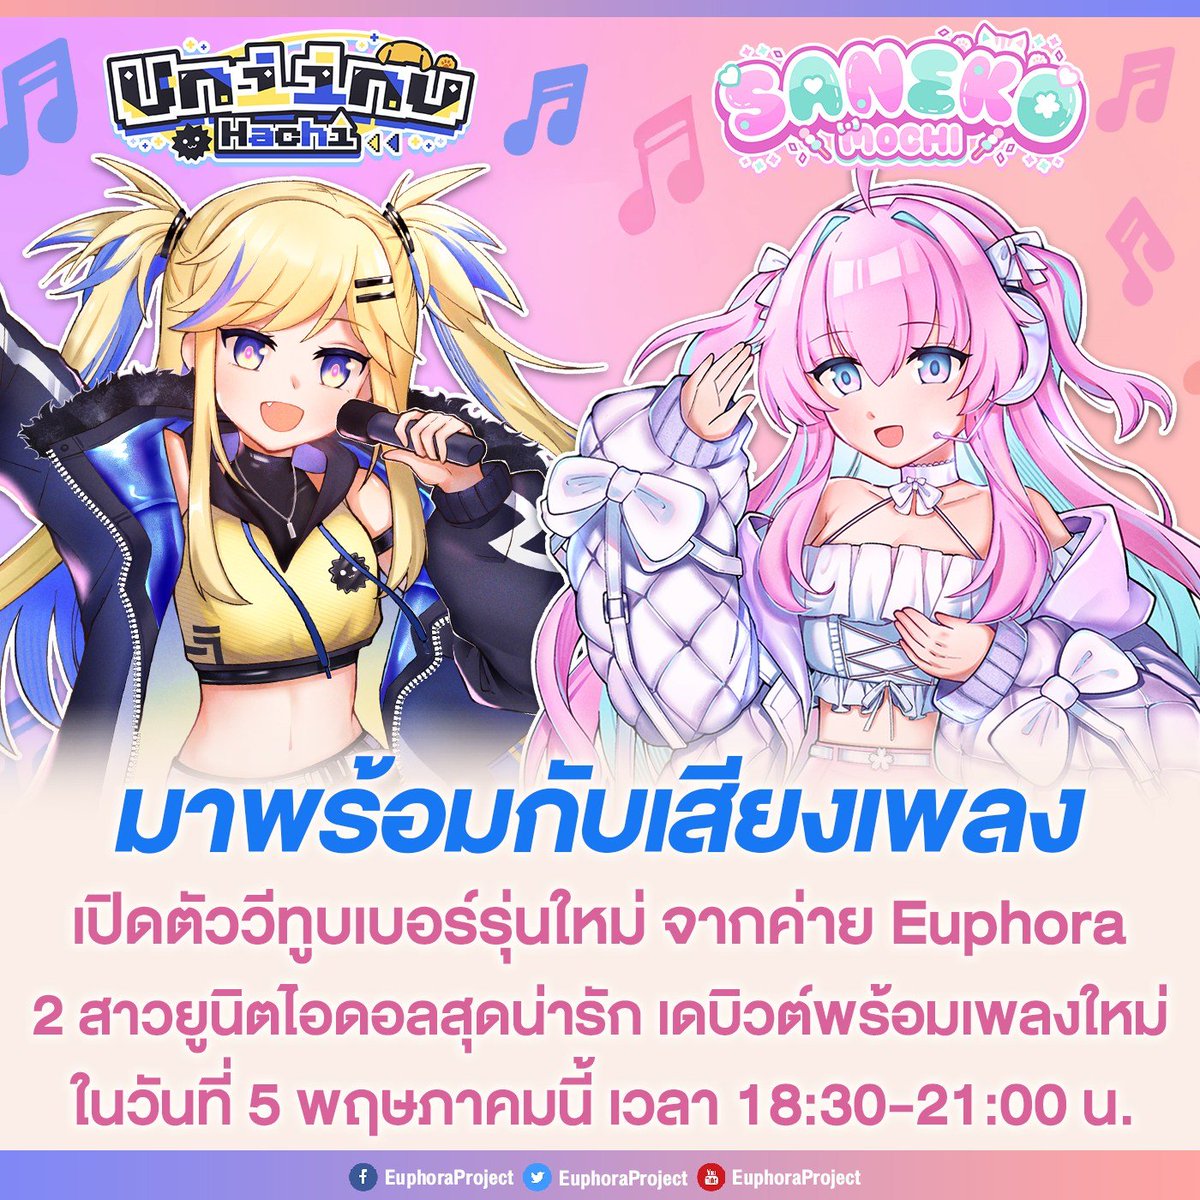 เปิดตัว Euphora Gen 3 วีทูบเบอร์รุ่นใหม่ Unit Idol ที่ประกอบไปด้วยสาวๆสุดน่ารักทั้งสอง @Saneko_EPR และ @Uniinu_EPR  พร้อมกับเพลงใหม่ PonPonPon ที่แค่ชื่อก็น่ารักแล้ว เดบิวต์พร้อมเพลงใหม่แบบแพ็คคู่วันอาทิตย์ที่ 5 พฤษภาคม นี้ บอกเลยห้ามพลาด!

#EuphoraProject #VTuberTH #VTuber